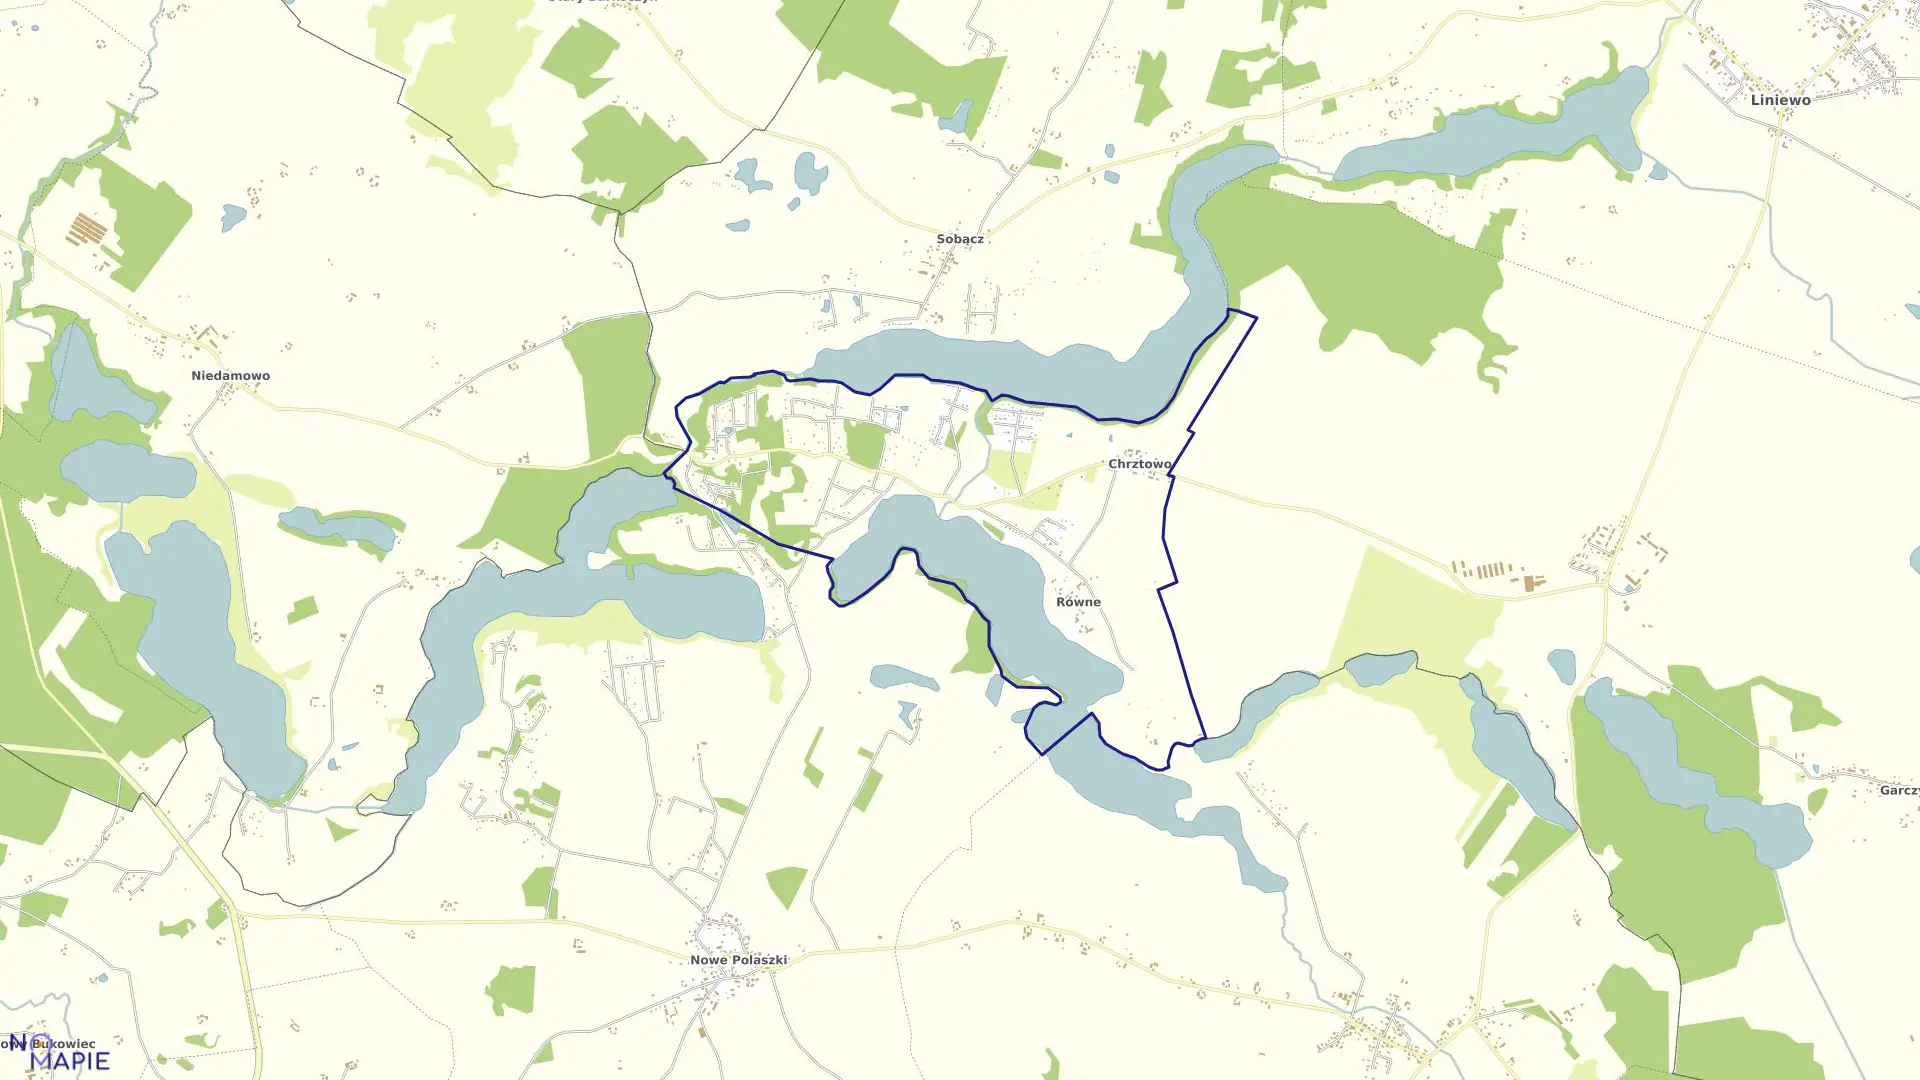 Mapa obrębu Chrztowo w gminie Liniewo